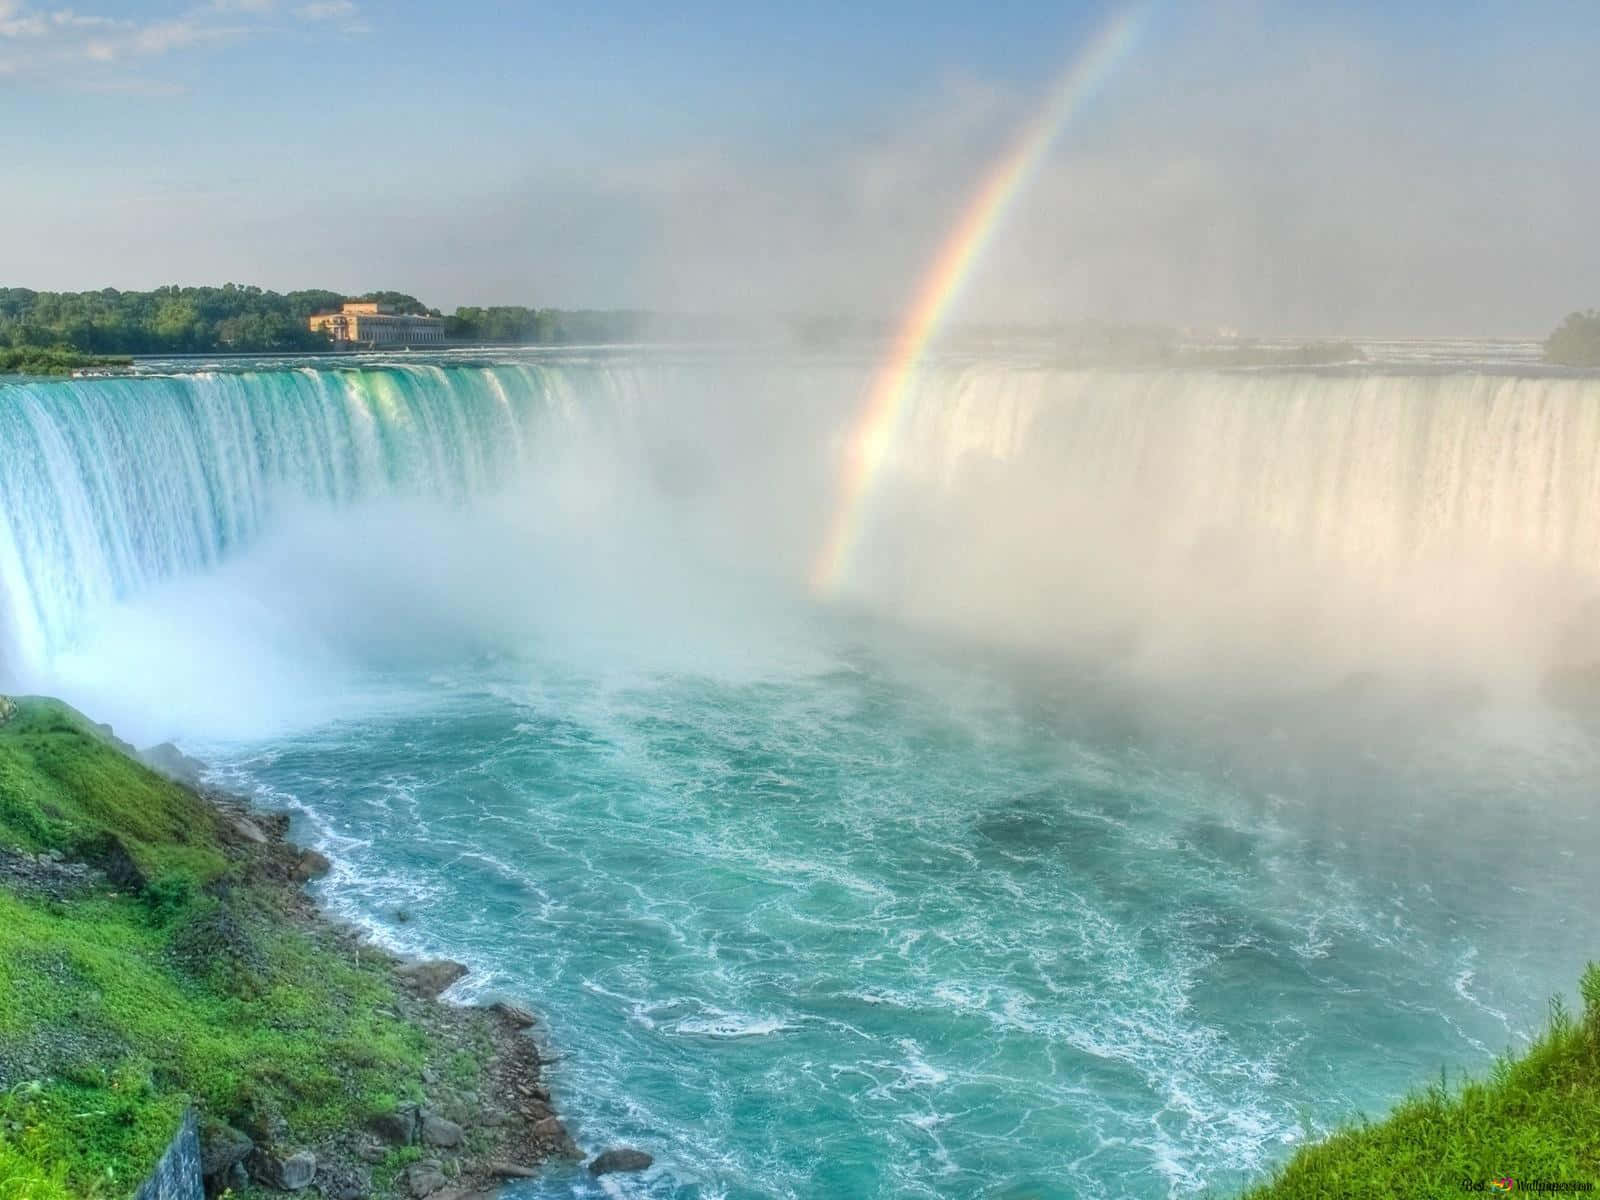 Fantastiskalandskap Hittade Vid Niagara Falls.